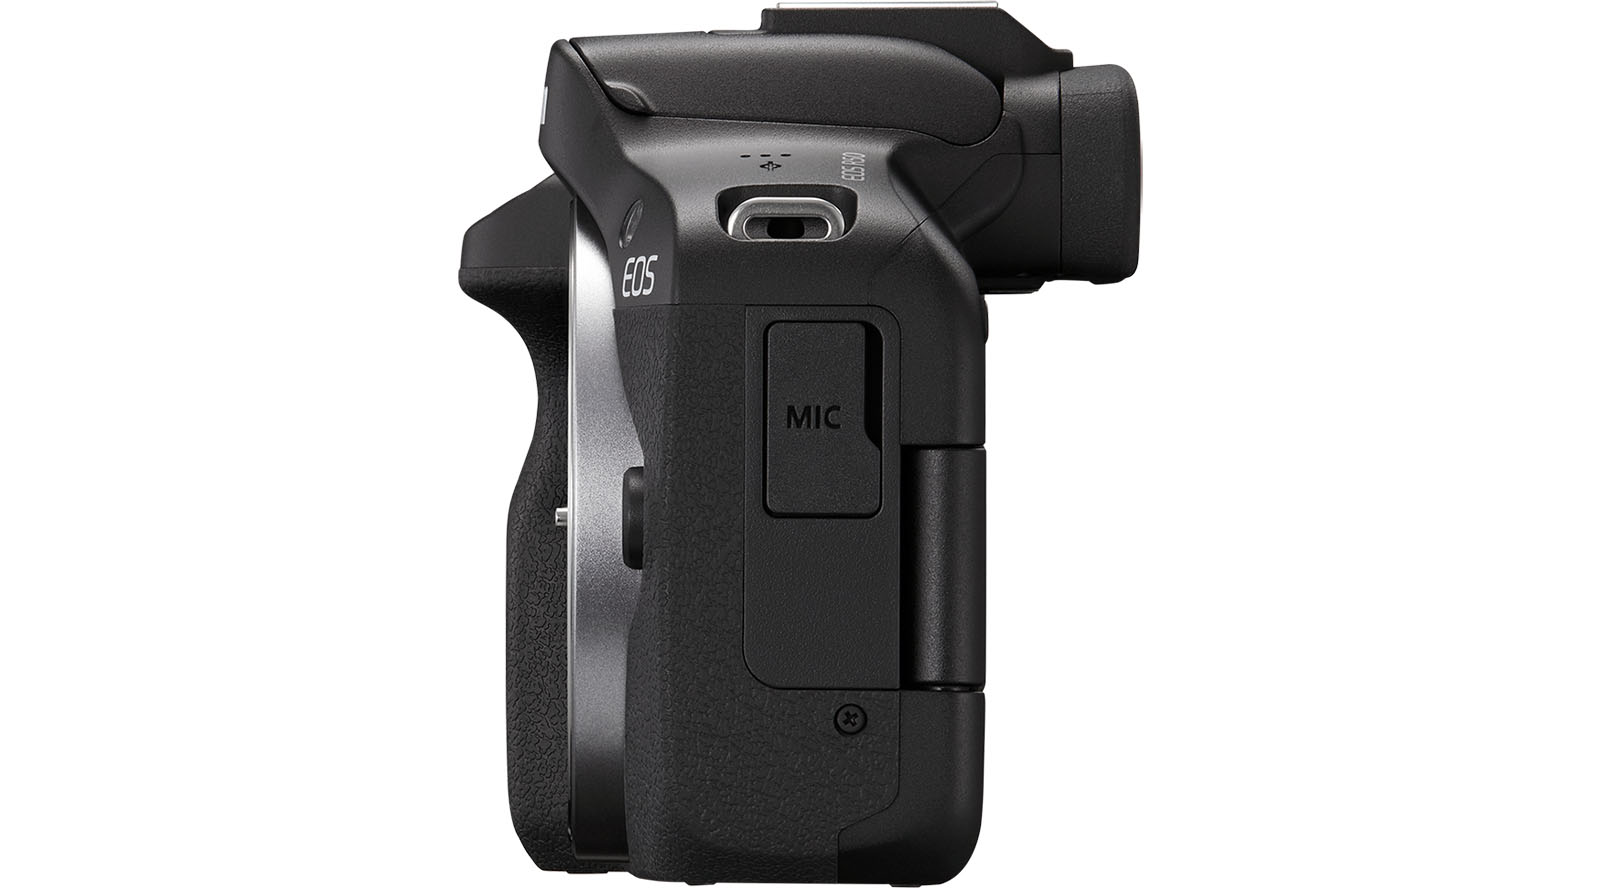 Canon ra mắt máy ảnh EOS R50, dòng máy ảnh thay thế M50 và sử dụng ngàm RF